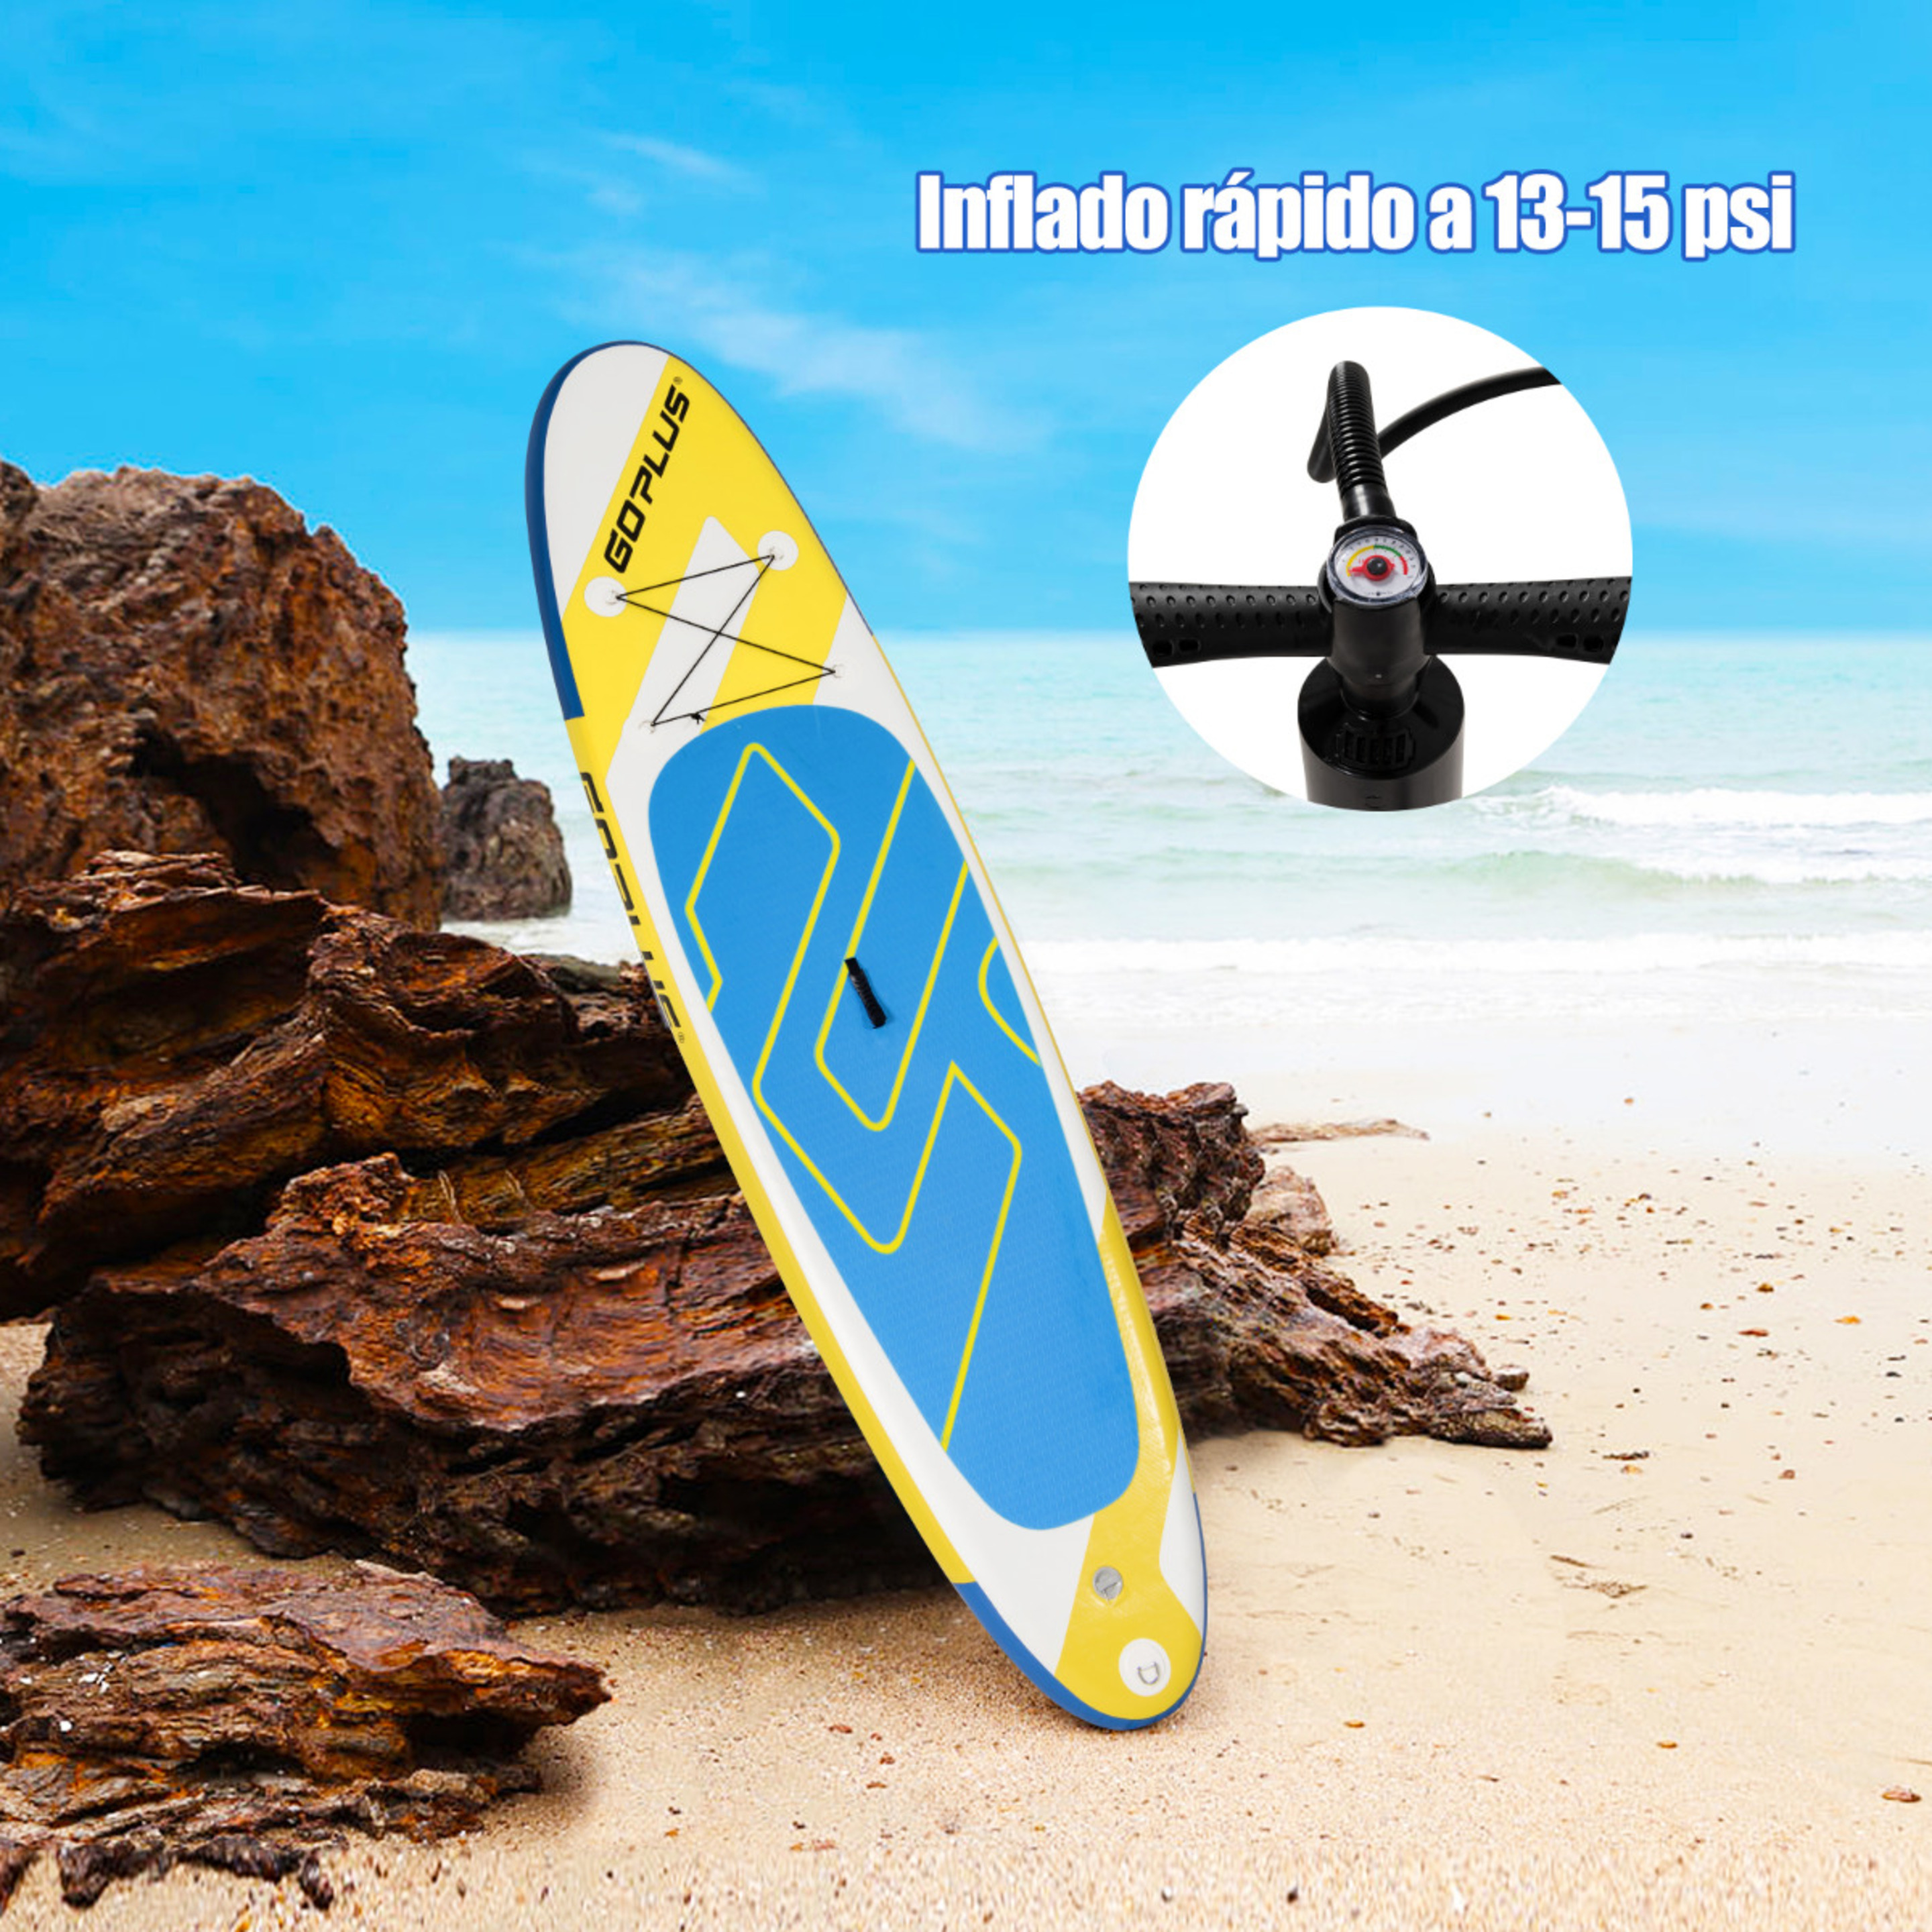 Costway Tabla De Paddle Inflable 335 Cm Flotante Antideslizante - Blanco/Amarillo - Tabla De Surf  MKP